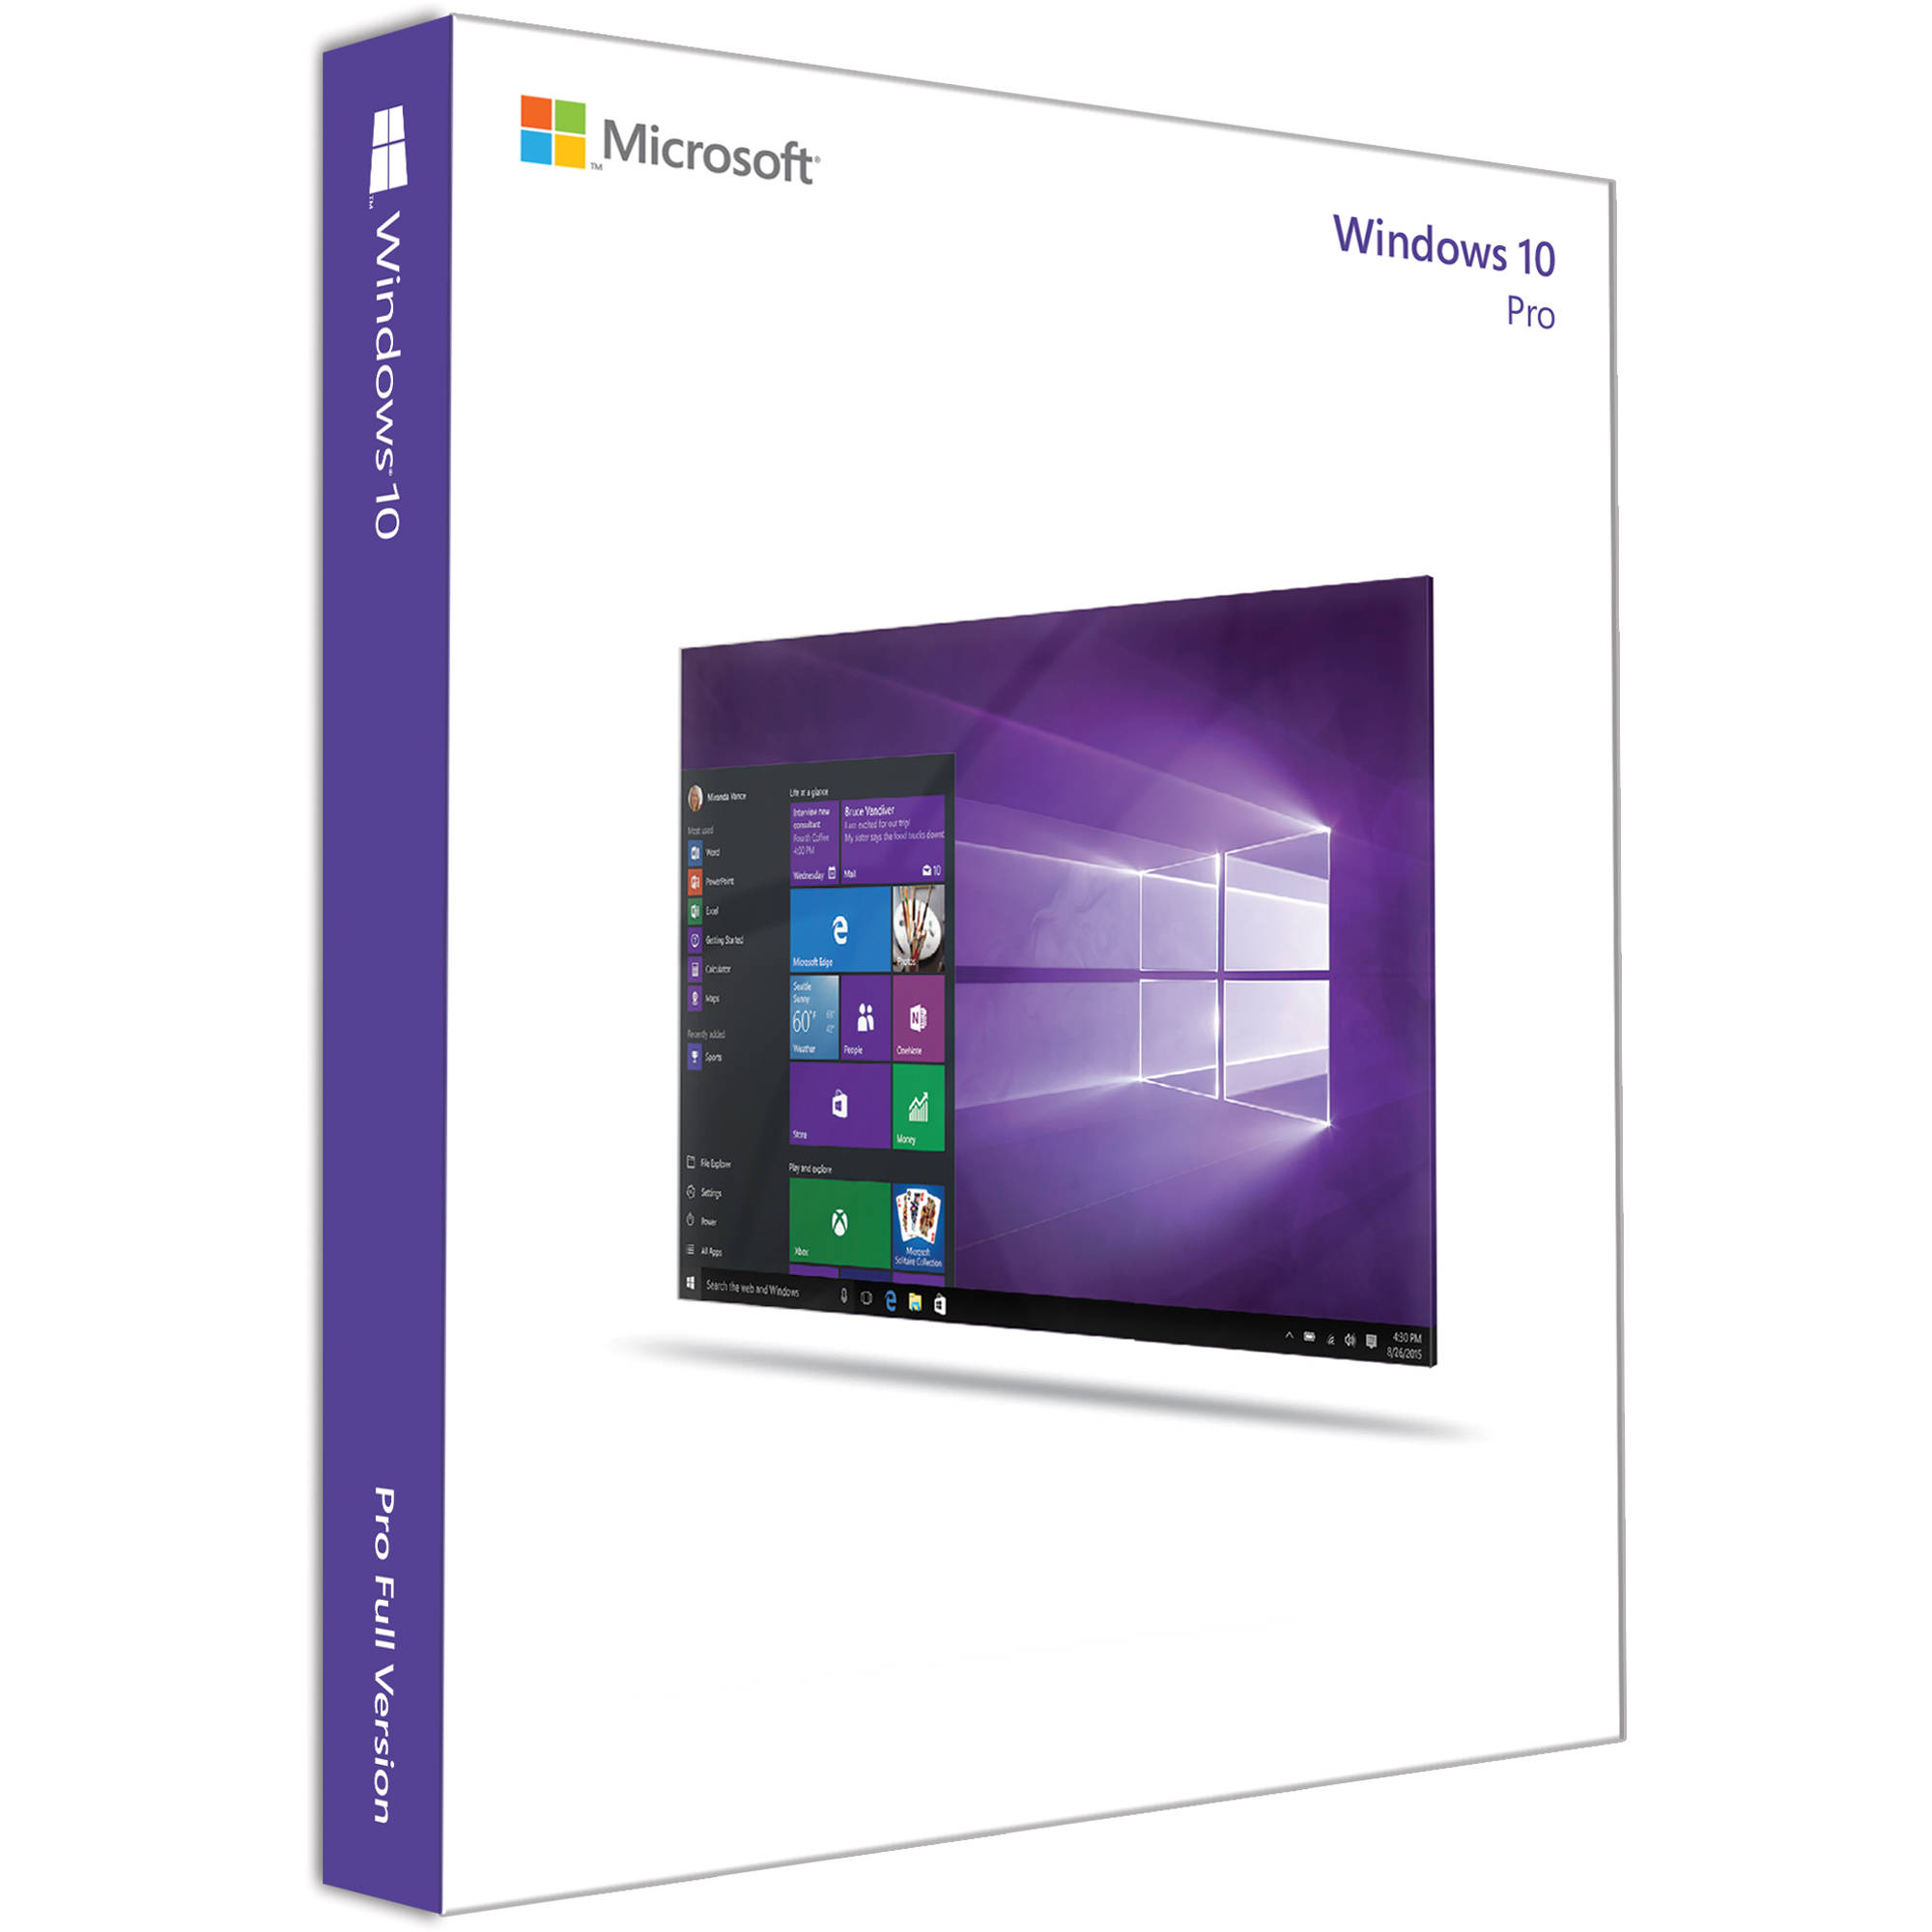 سیستم عامل مایکروسافت windows 10 Pro Retail نشر آورکام